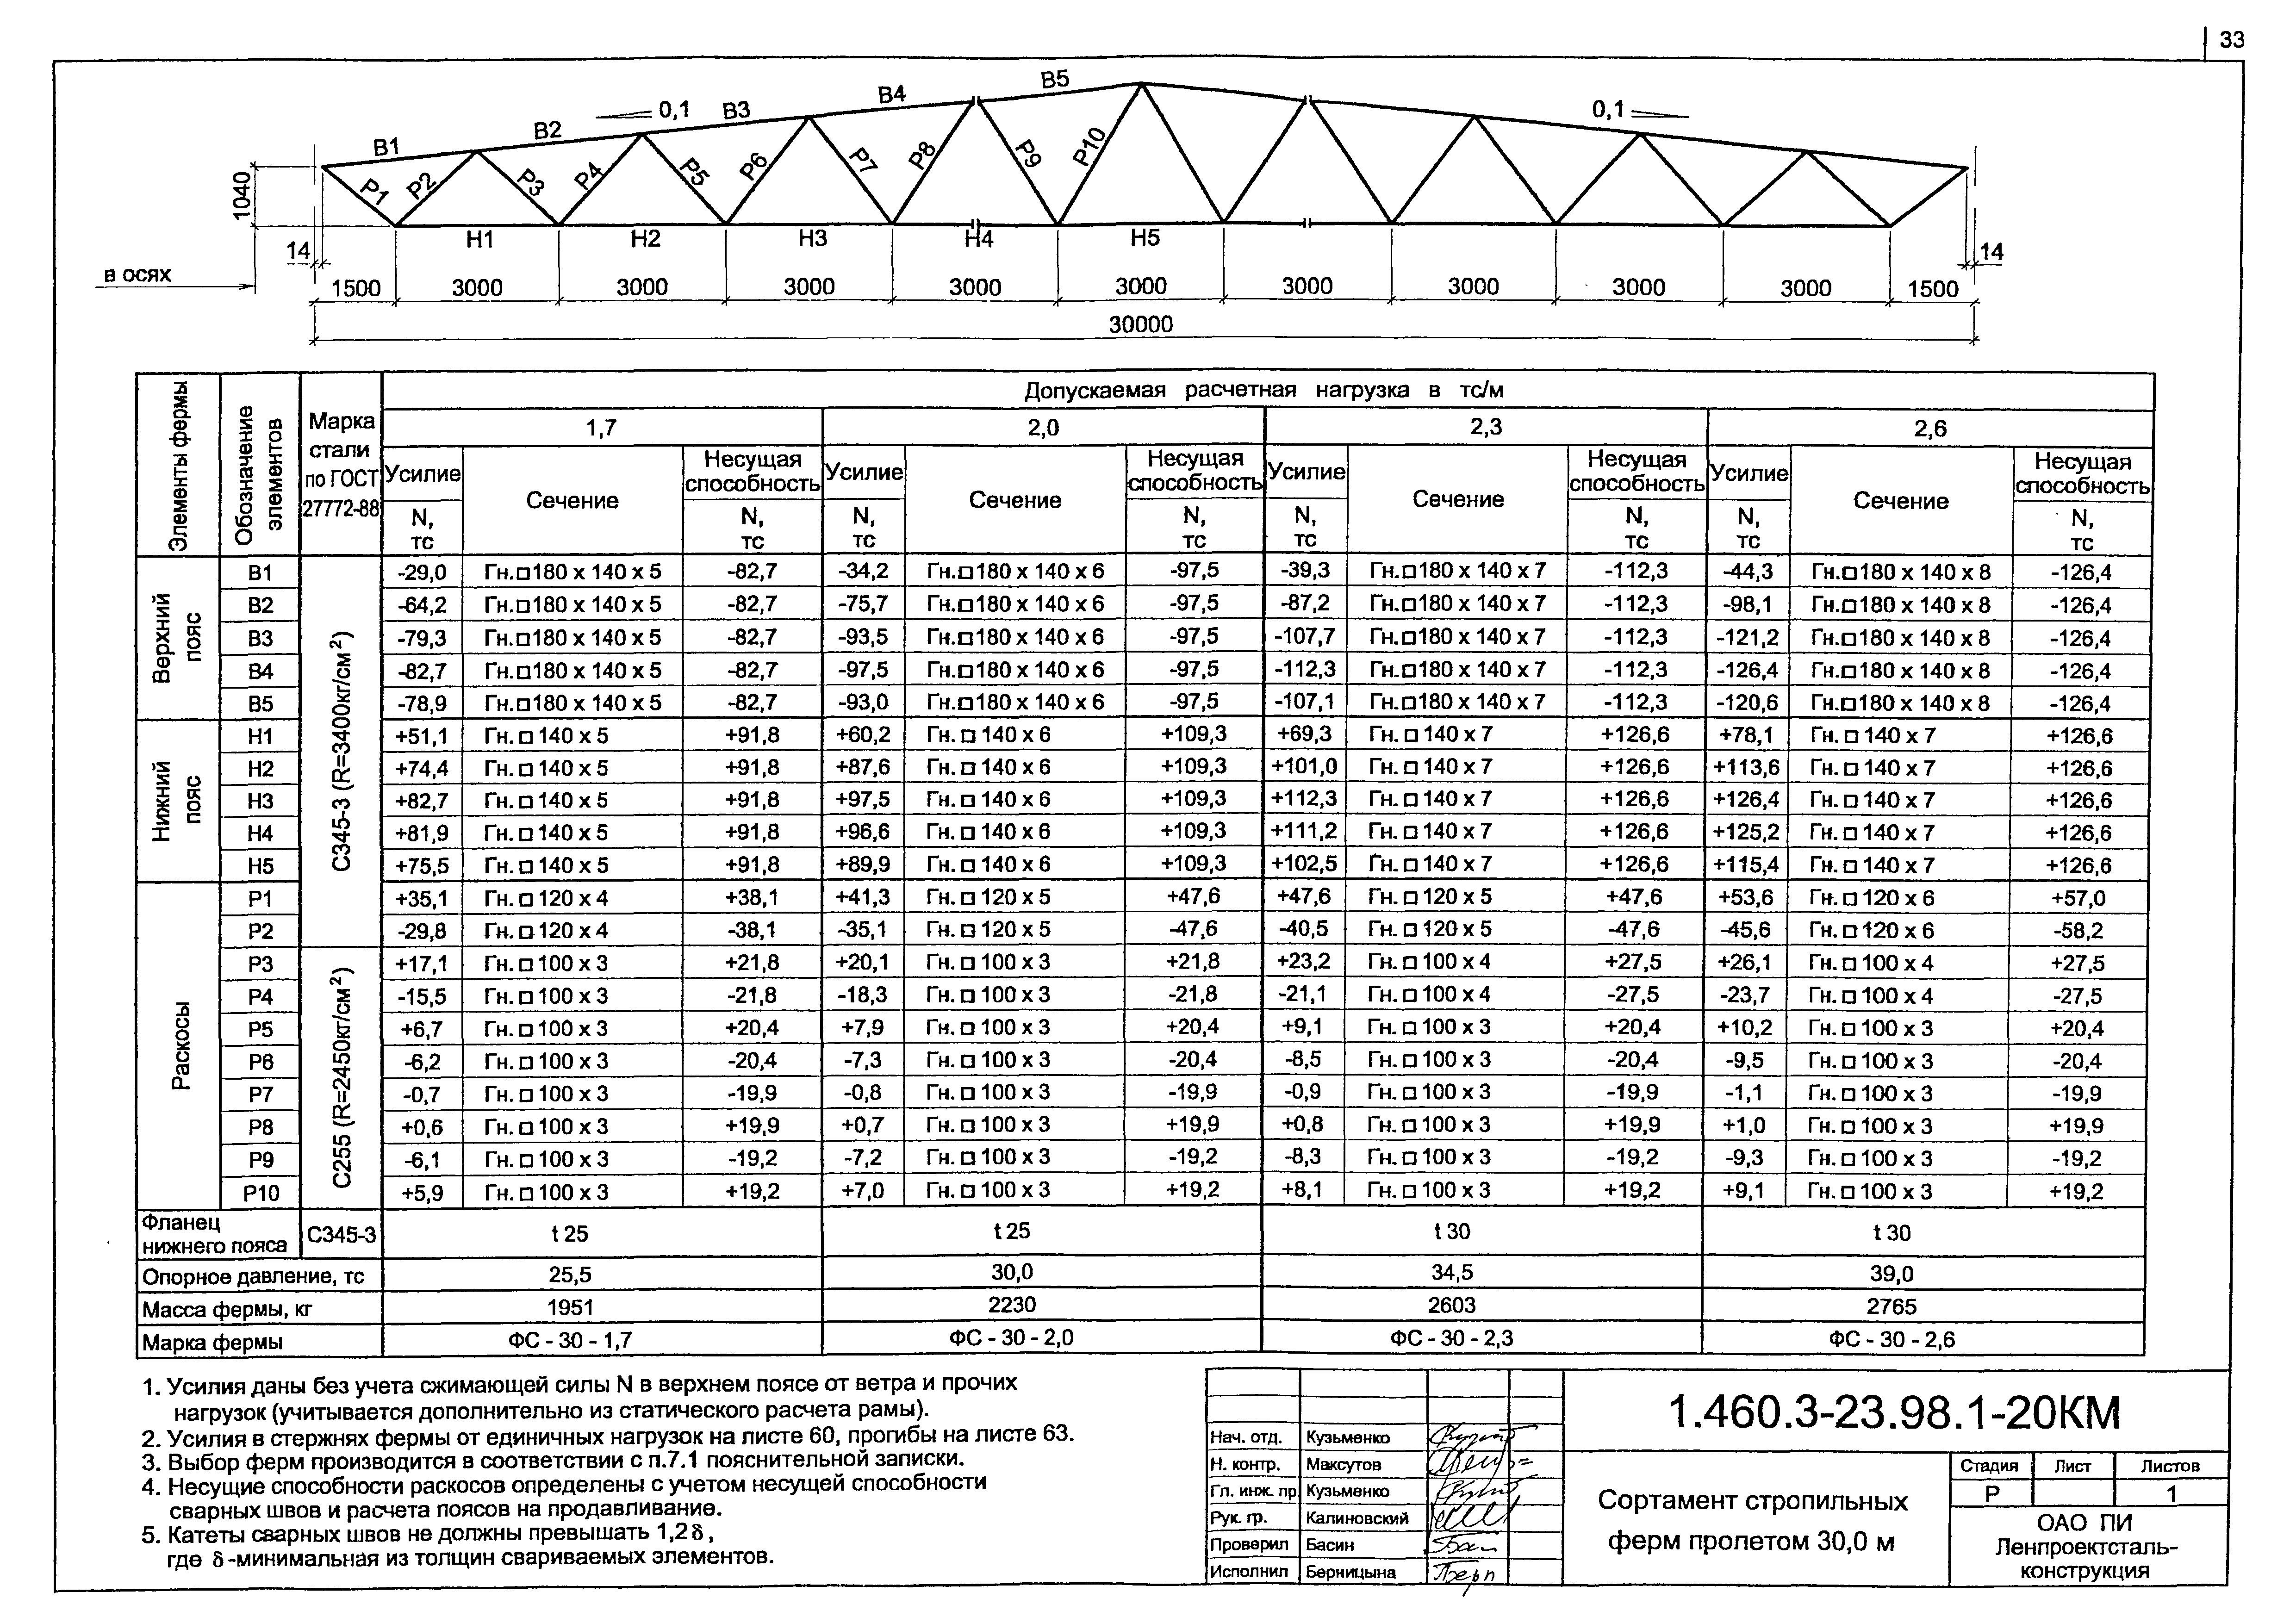 Типовая Документация Серию 1.460.3-23.98